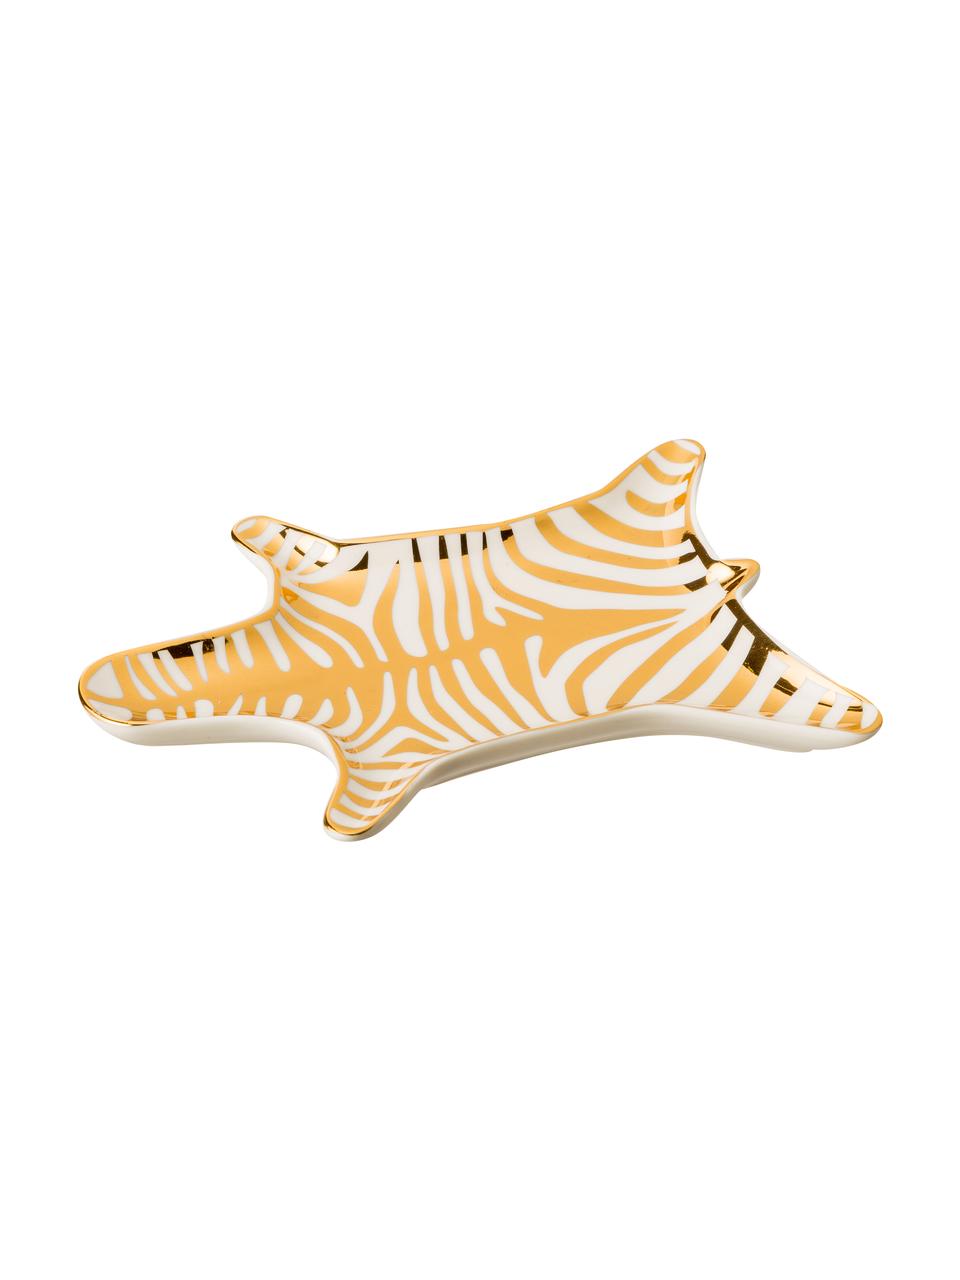 Miska dekoracyjna Zebra, Porcelana, Złoty, biały, 15 cm